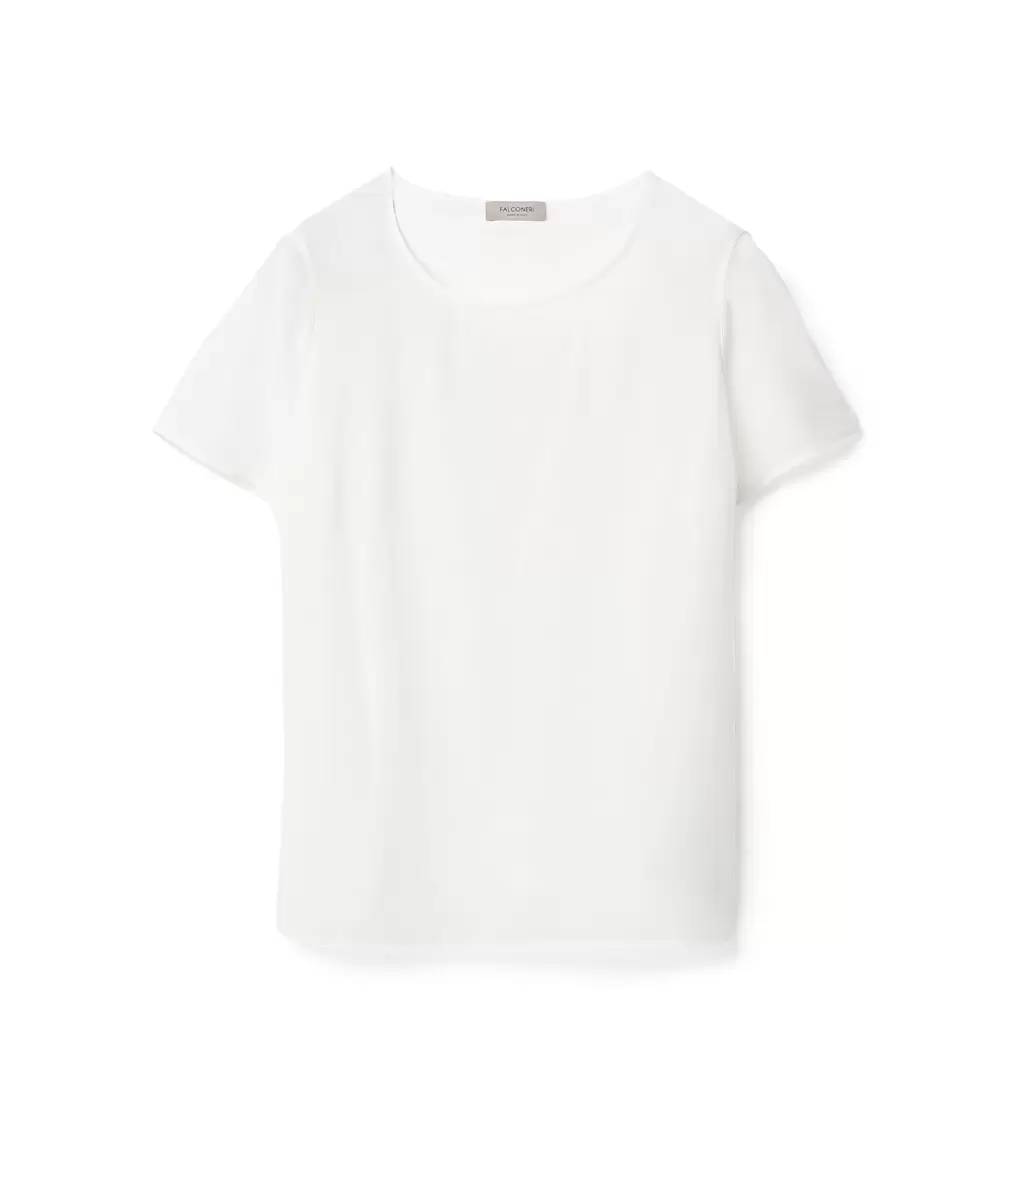 Kobieta Jedwabna Koszulka Z Okrągłym Dekoltem Falconeri Topy I T-Shirty White - 3